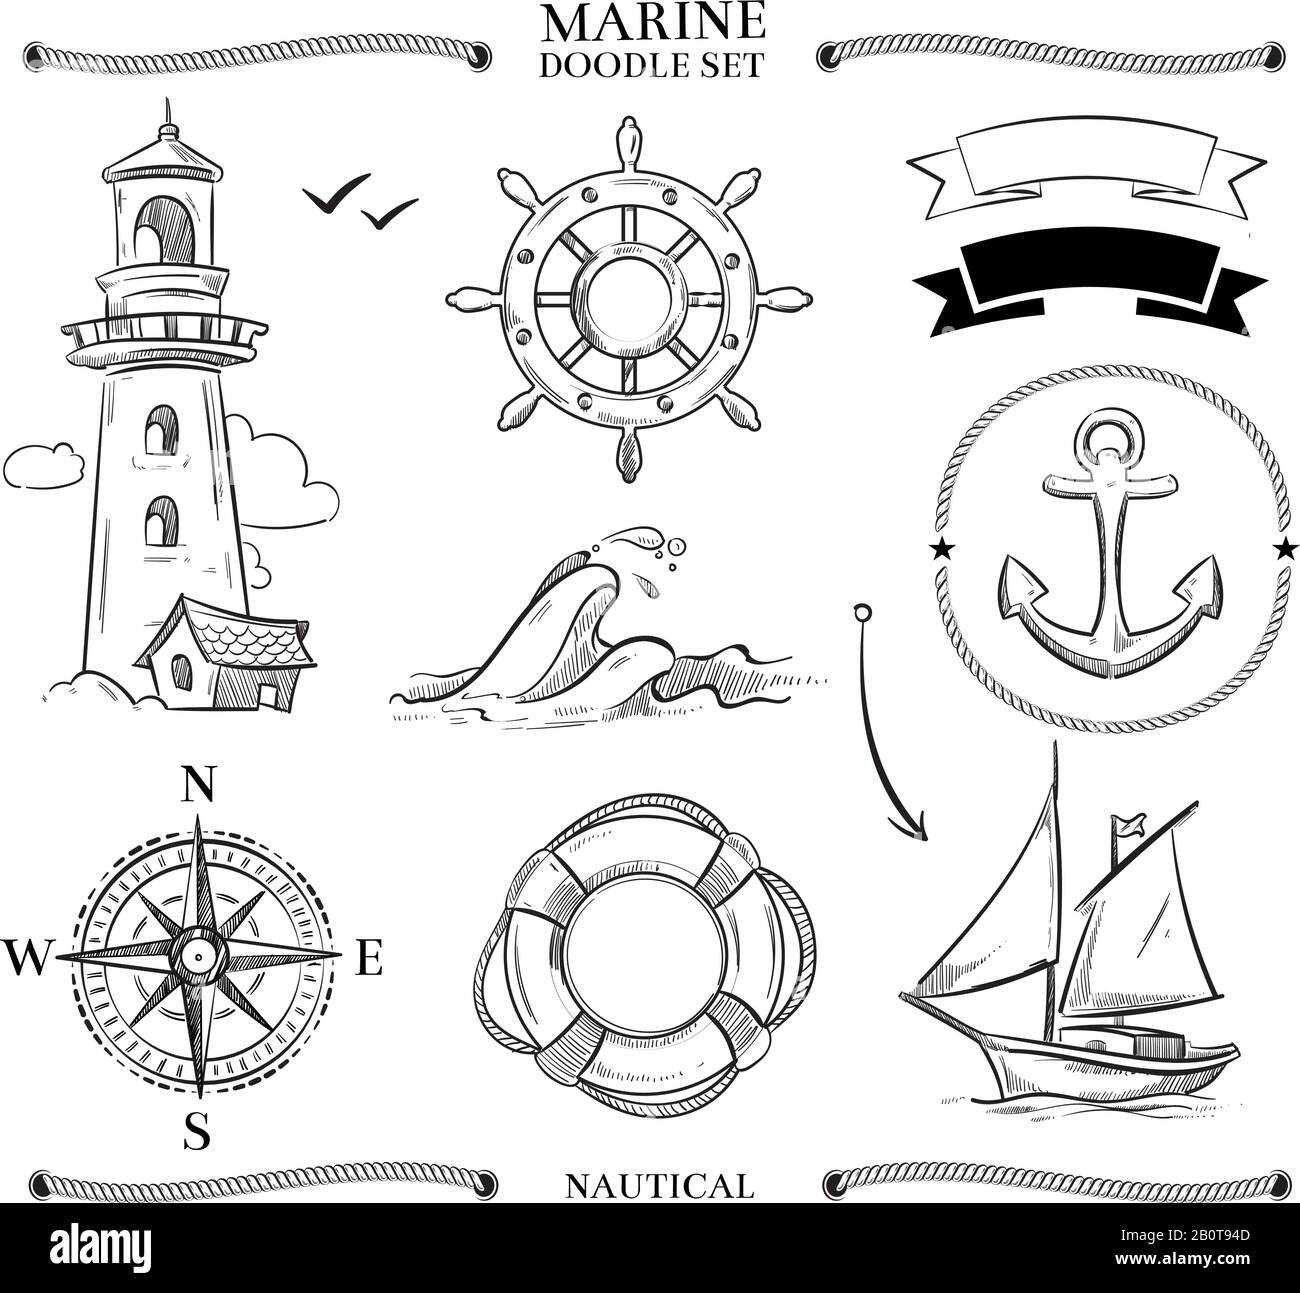 Seilrahmen, Boote, Marine Knoten, Anker nautische Vektor-Doodle Set. Kompass und Schiffsboot segeln, Illustration des nautischen Schiffes Stock Vektor